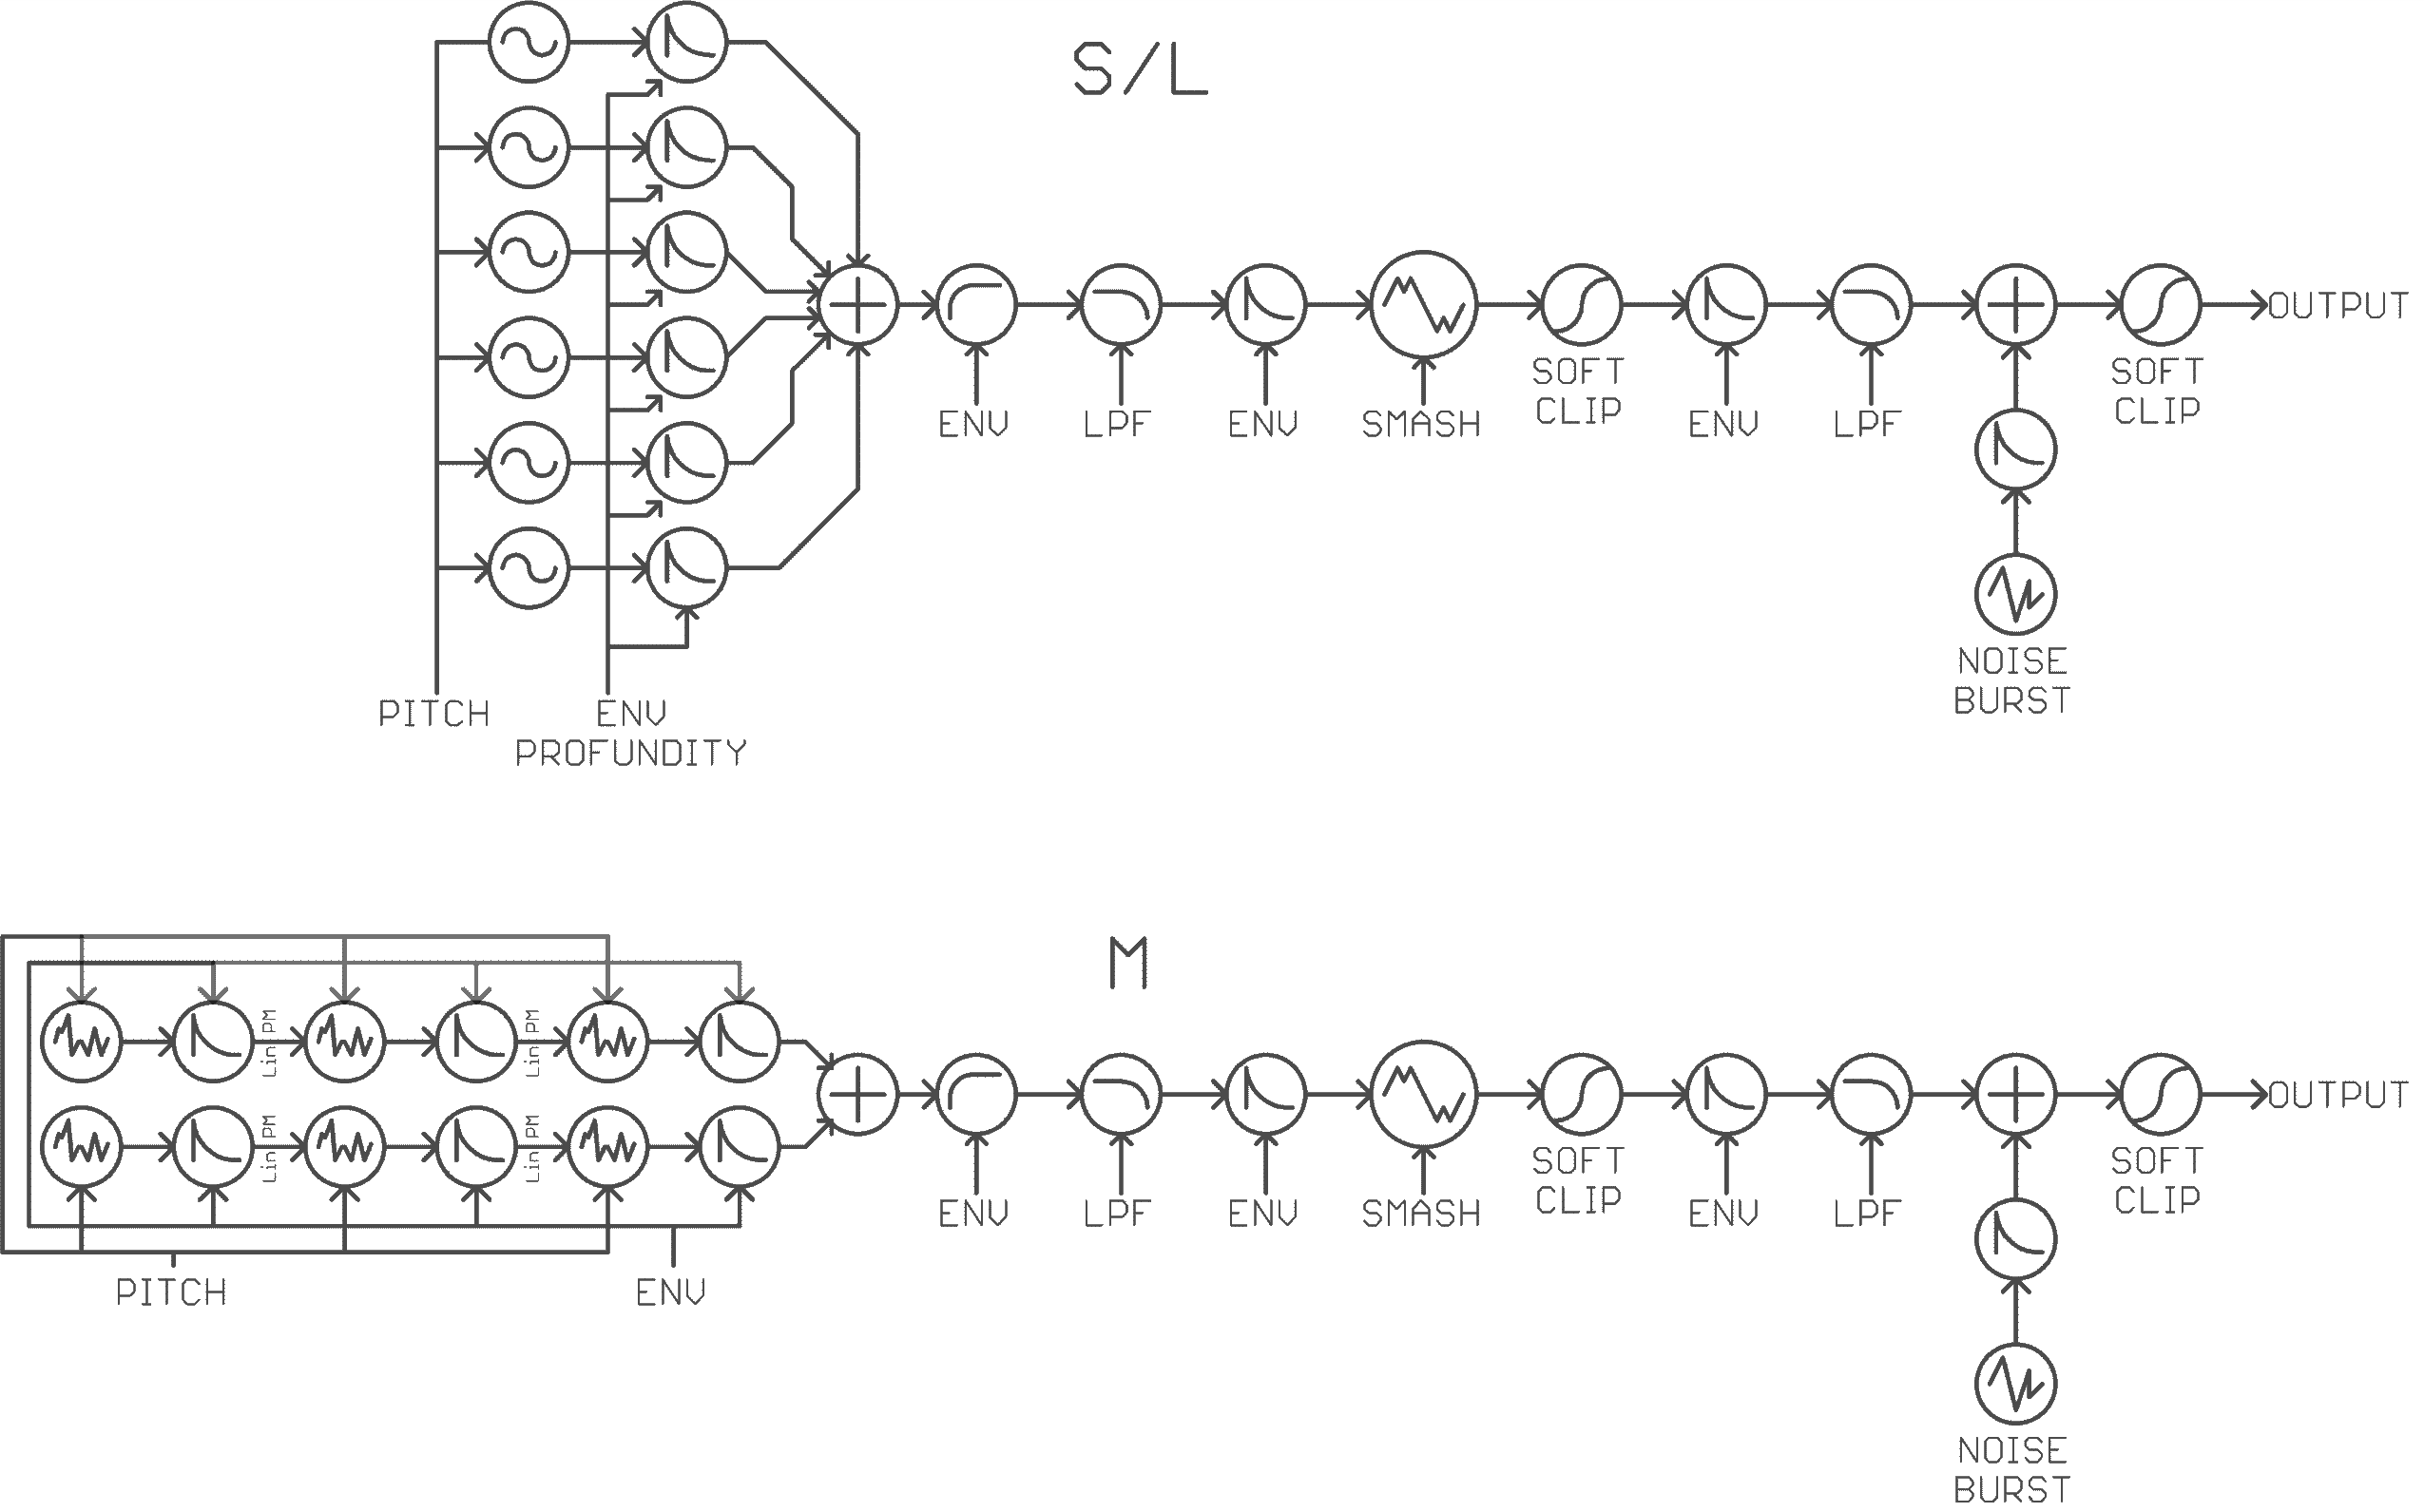 Sequence diagram of Manis Iteritas' sound generation